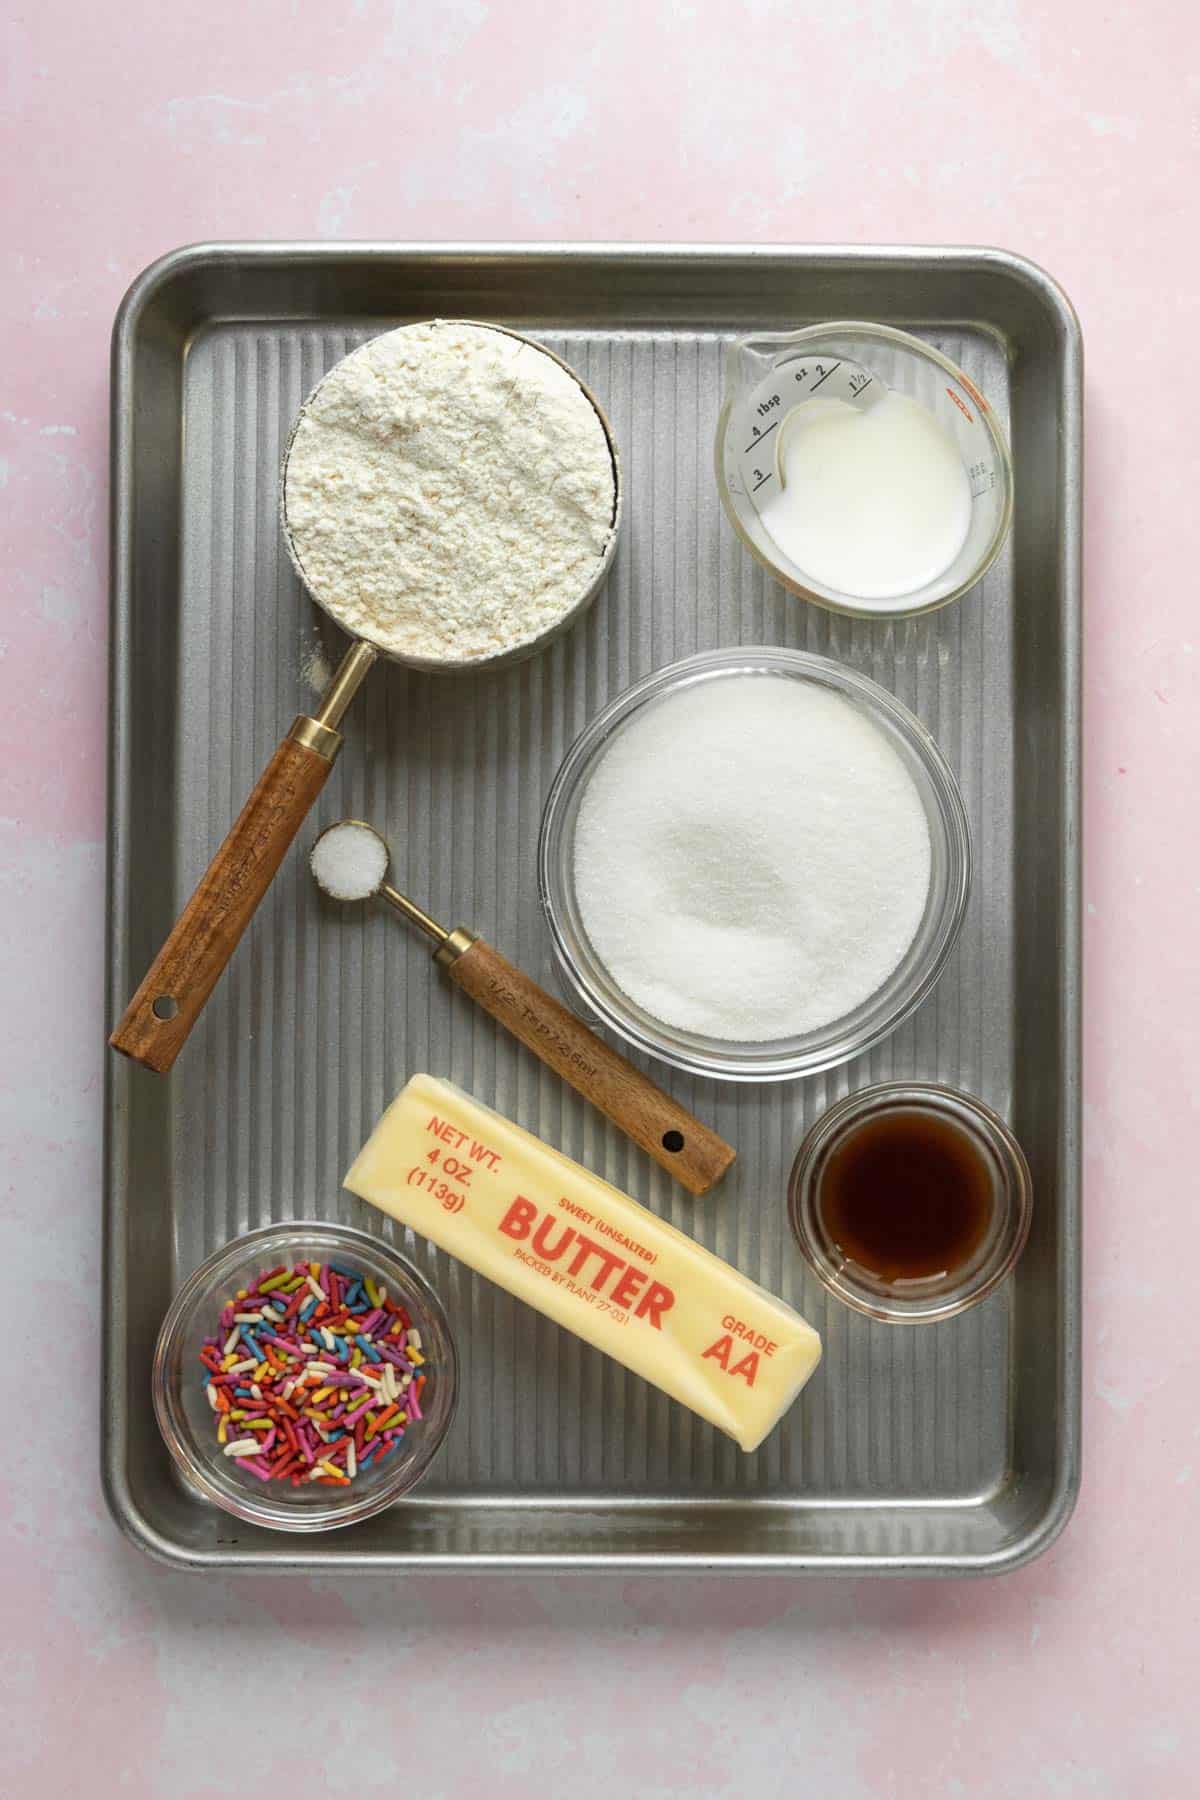 Ingredients of edible sugar cookie dough.